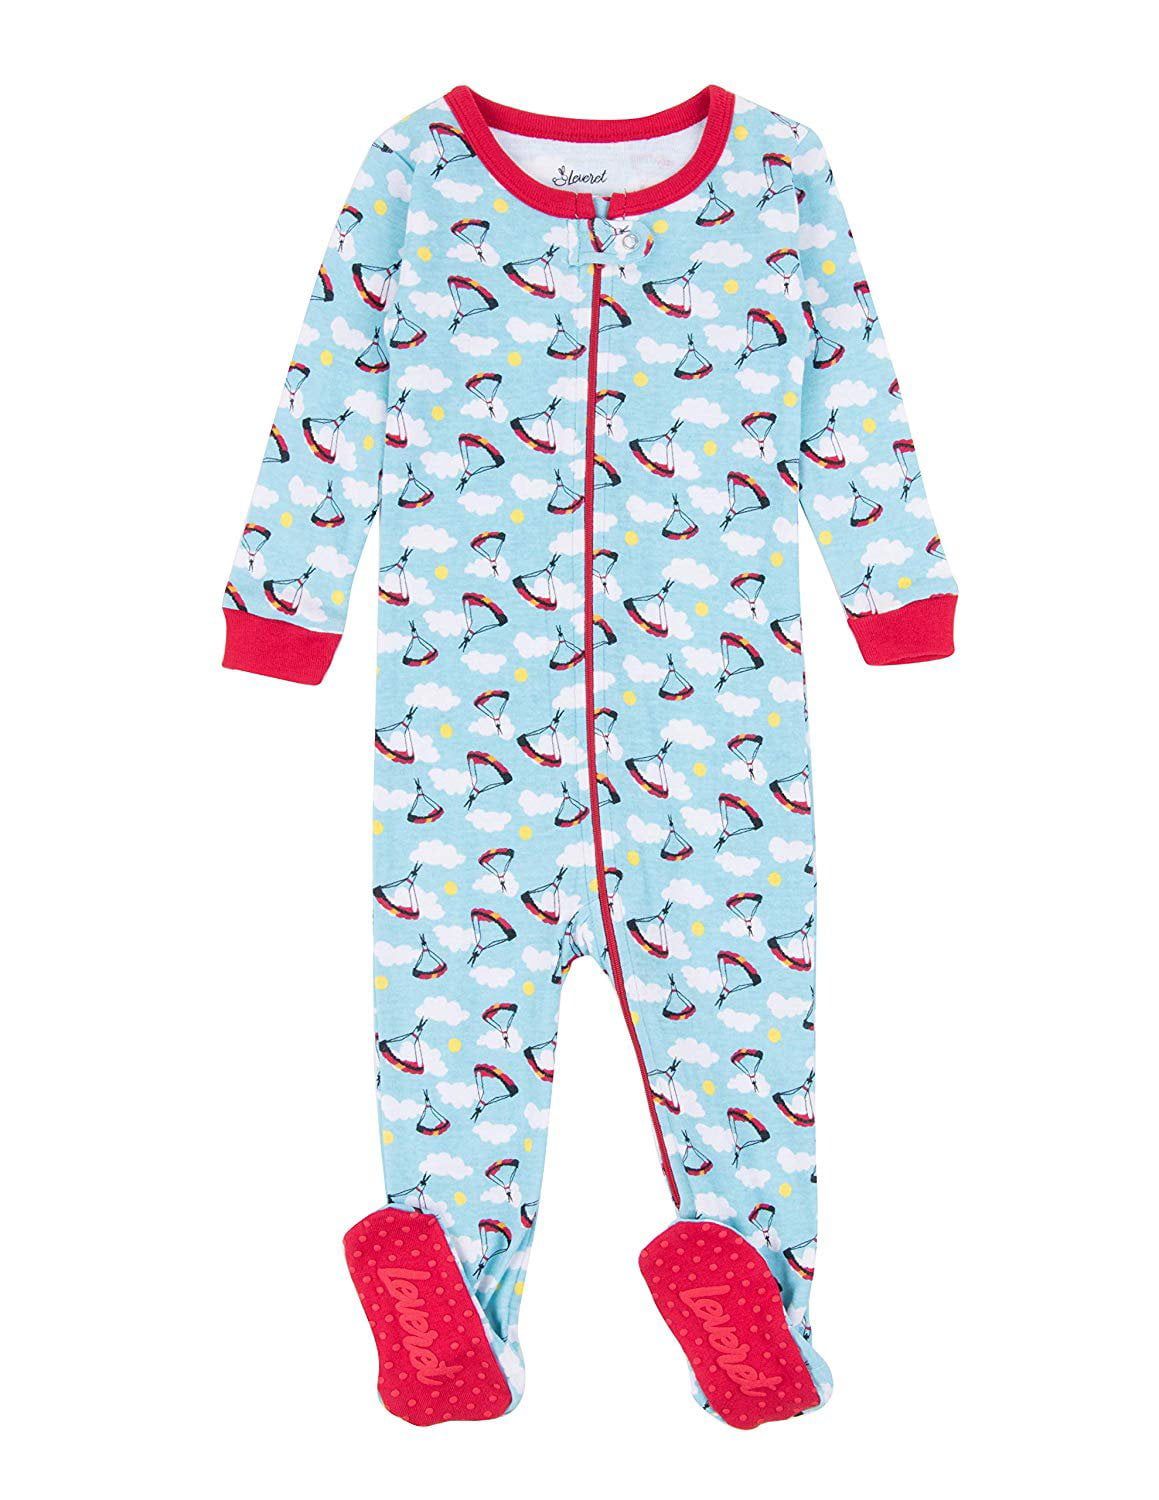 Leveret - Leveret Kids Pajamas Baby Boys Girls Footed Pajamas Sleeper ...